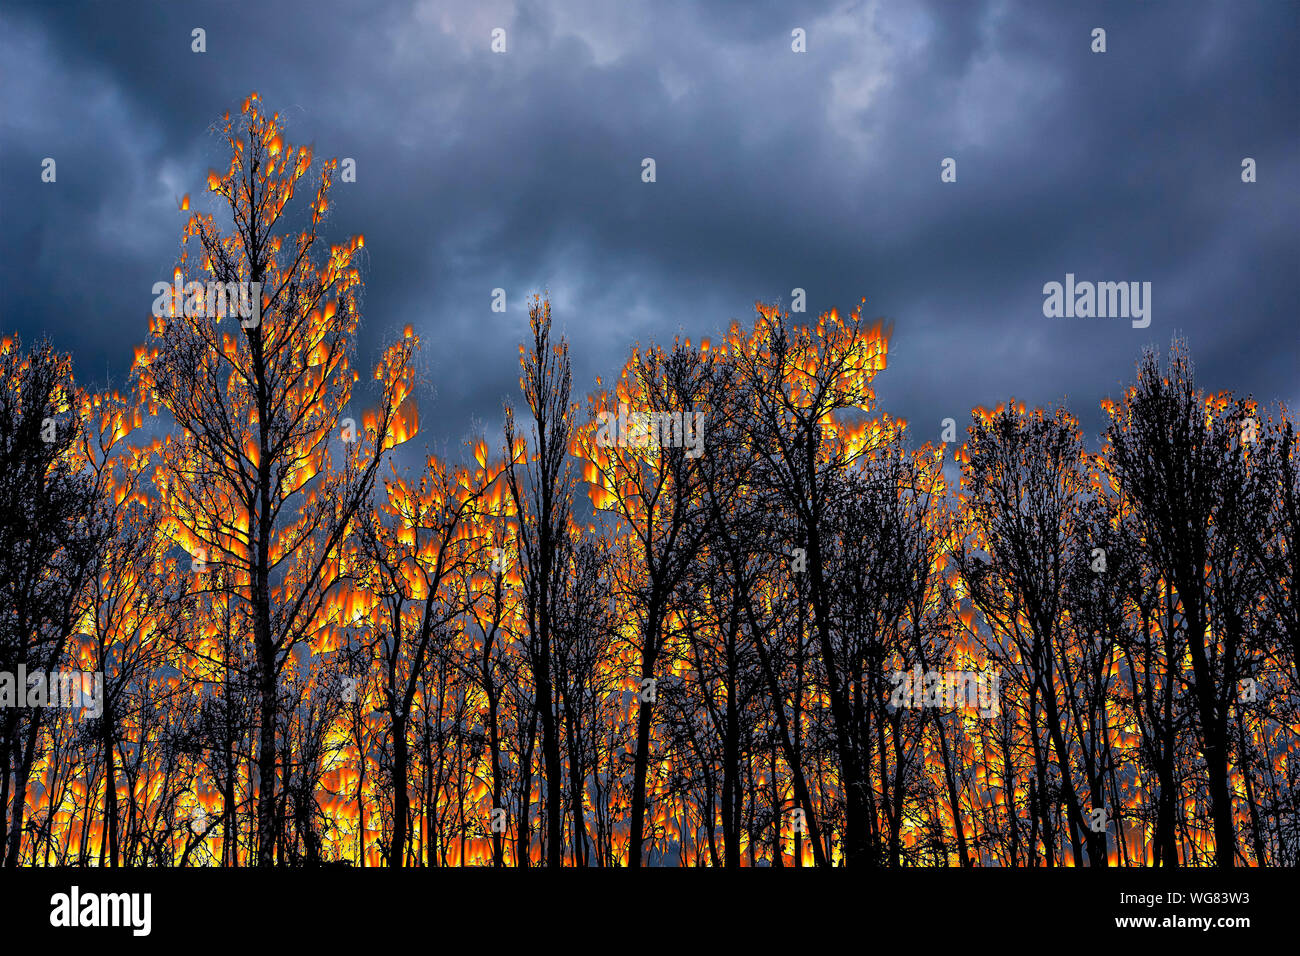 Bäume in Brand, Konzept für Amazon Wald brennen Stockfotografie - Alamy